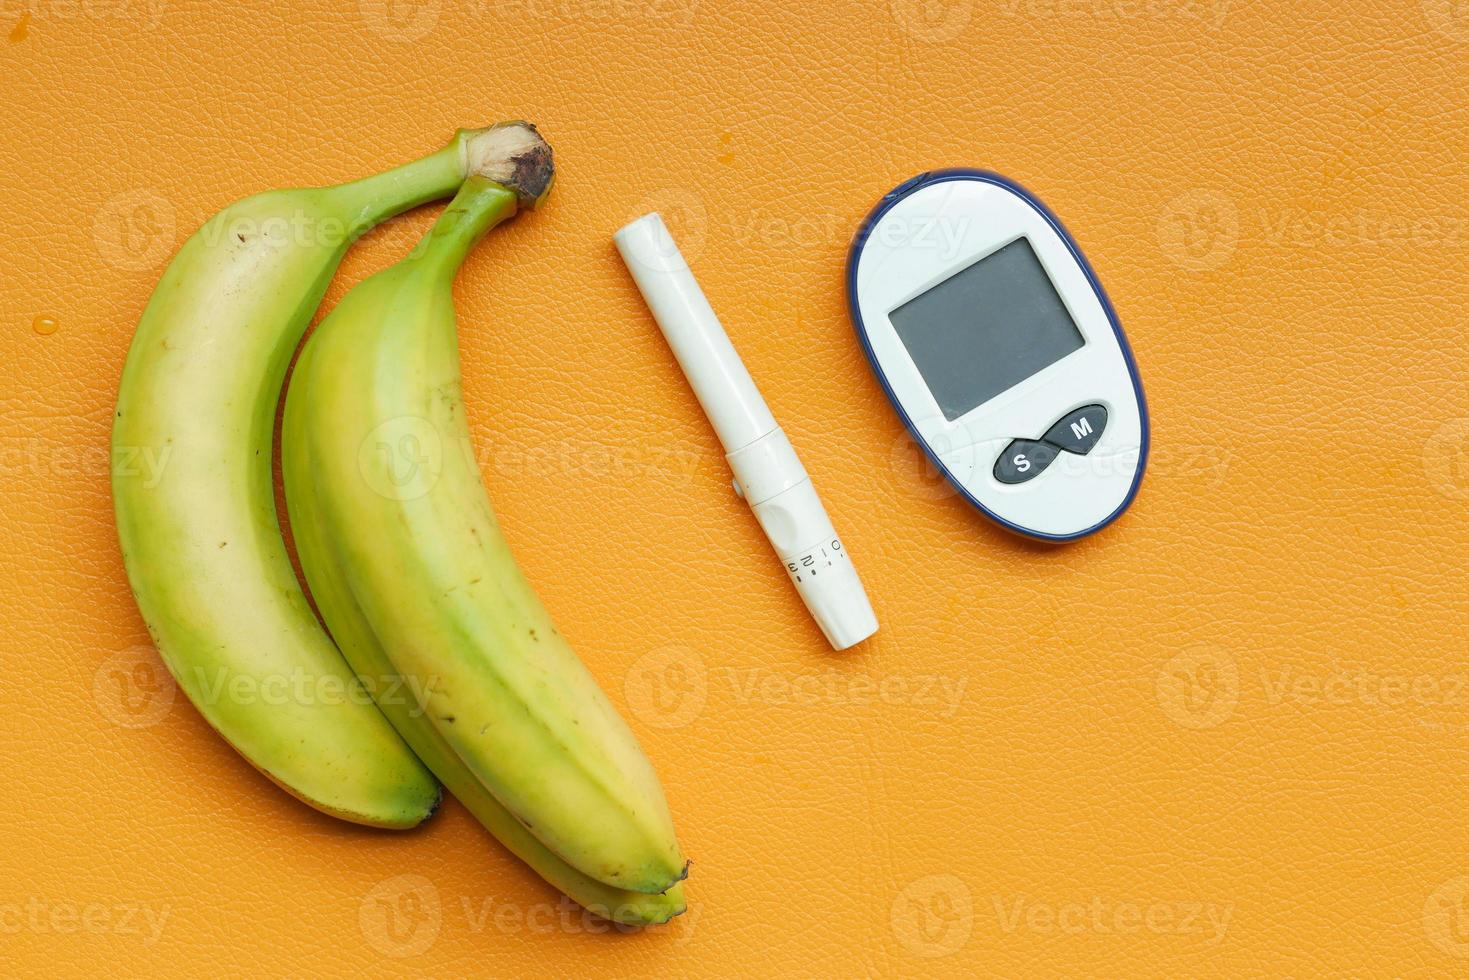 Nahaufnahme von diabetischen Messwerkzeugen und Pillen auf farbigem Hintergrund foto